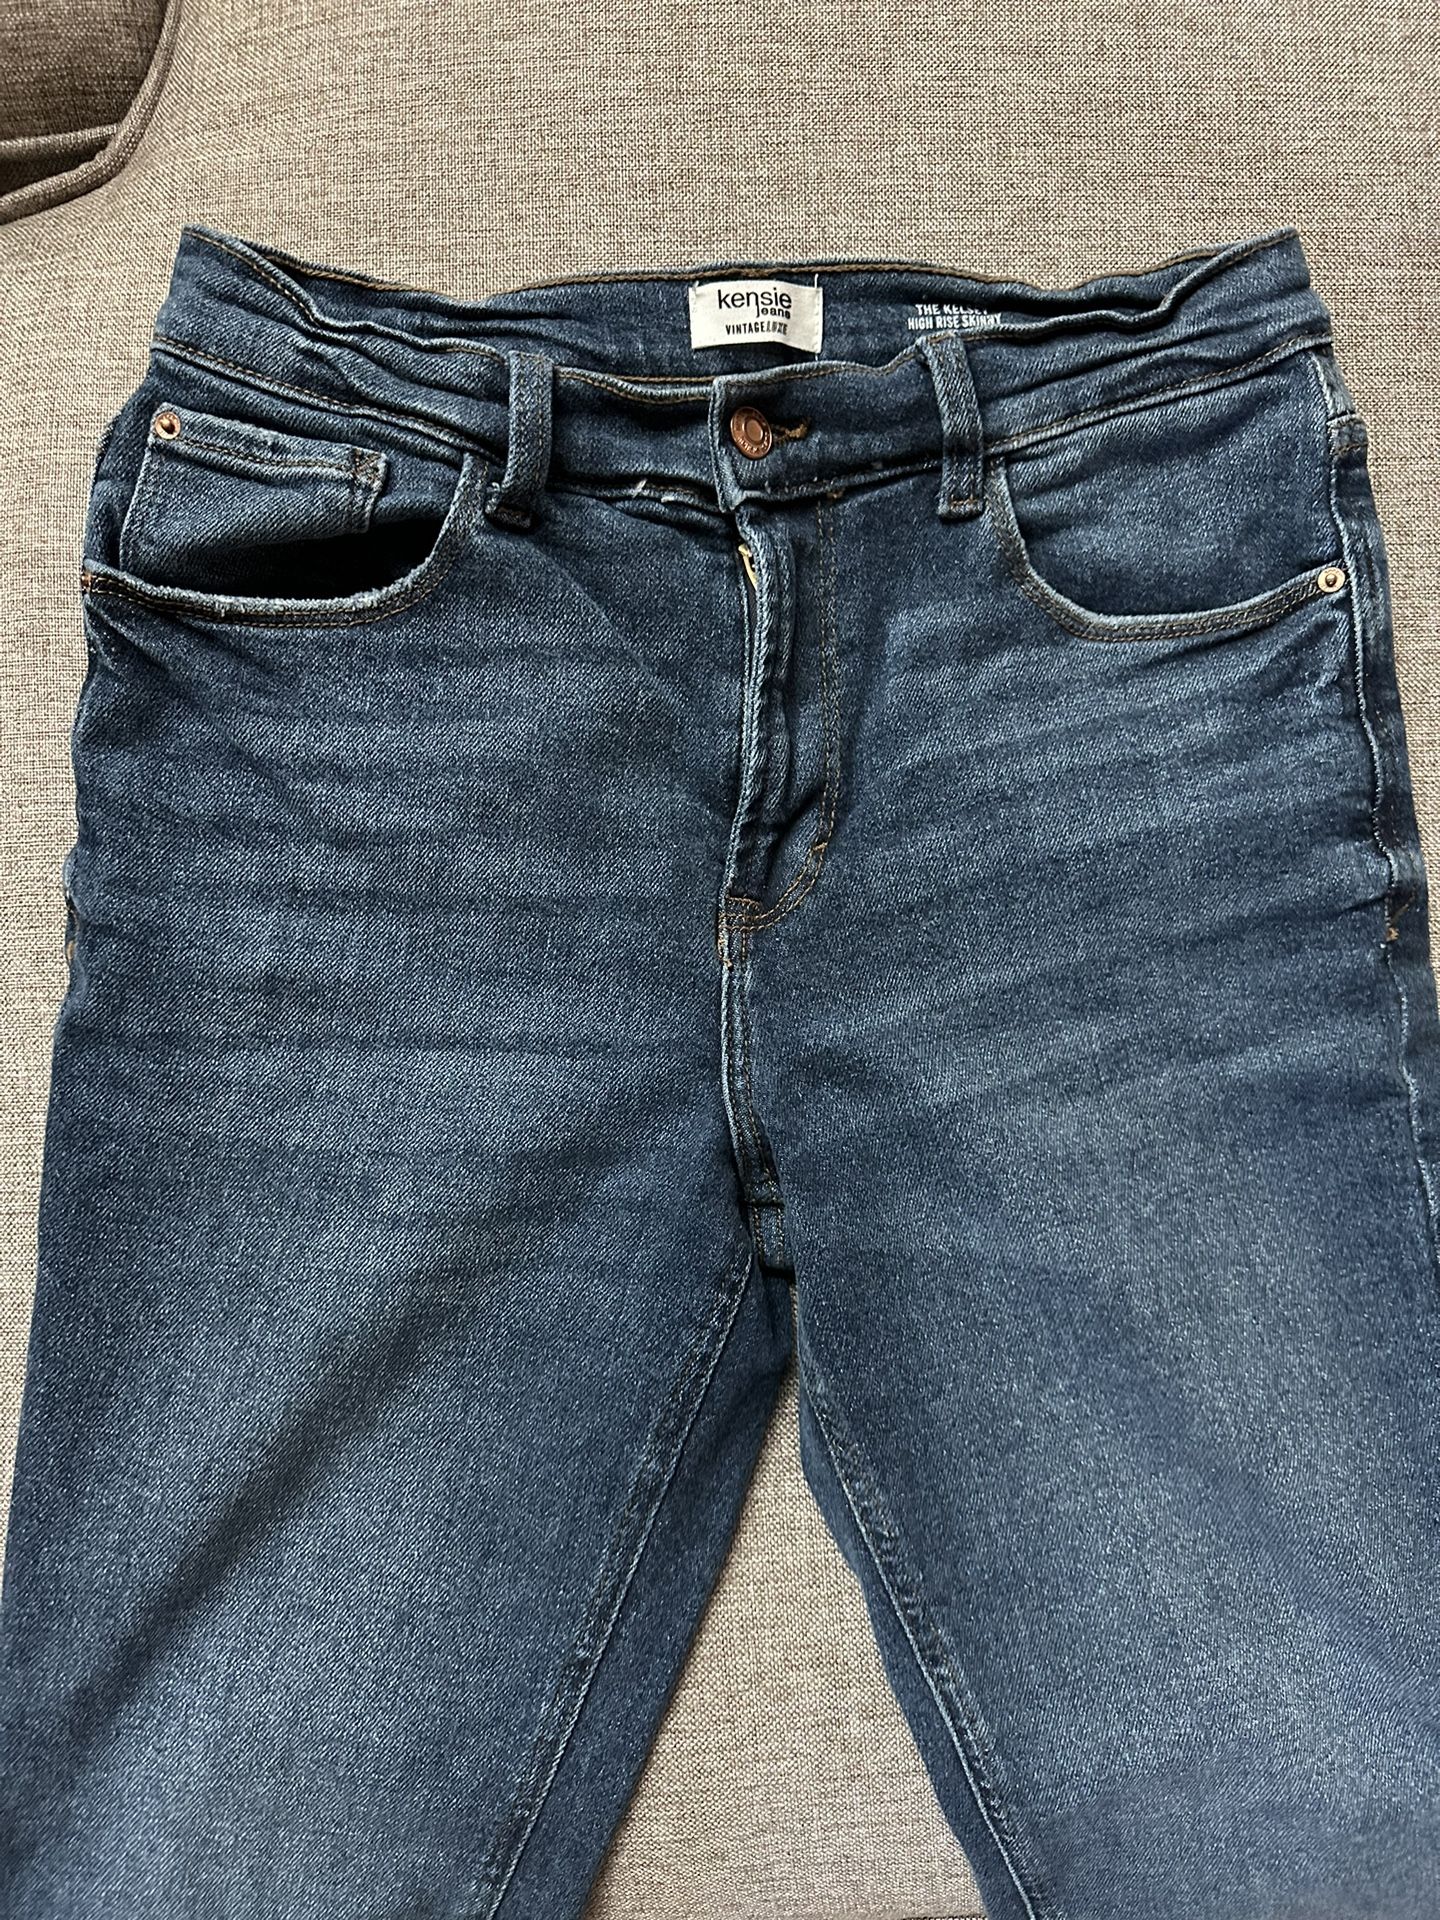 Women Kensie Jeans Size 10/30